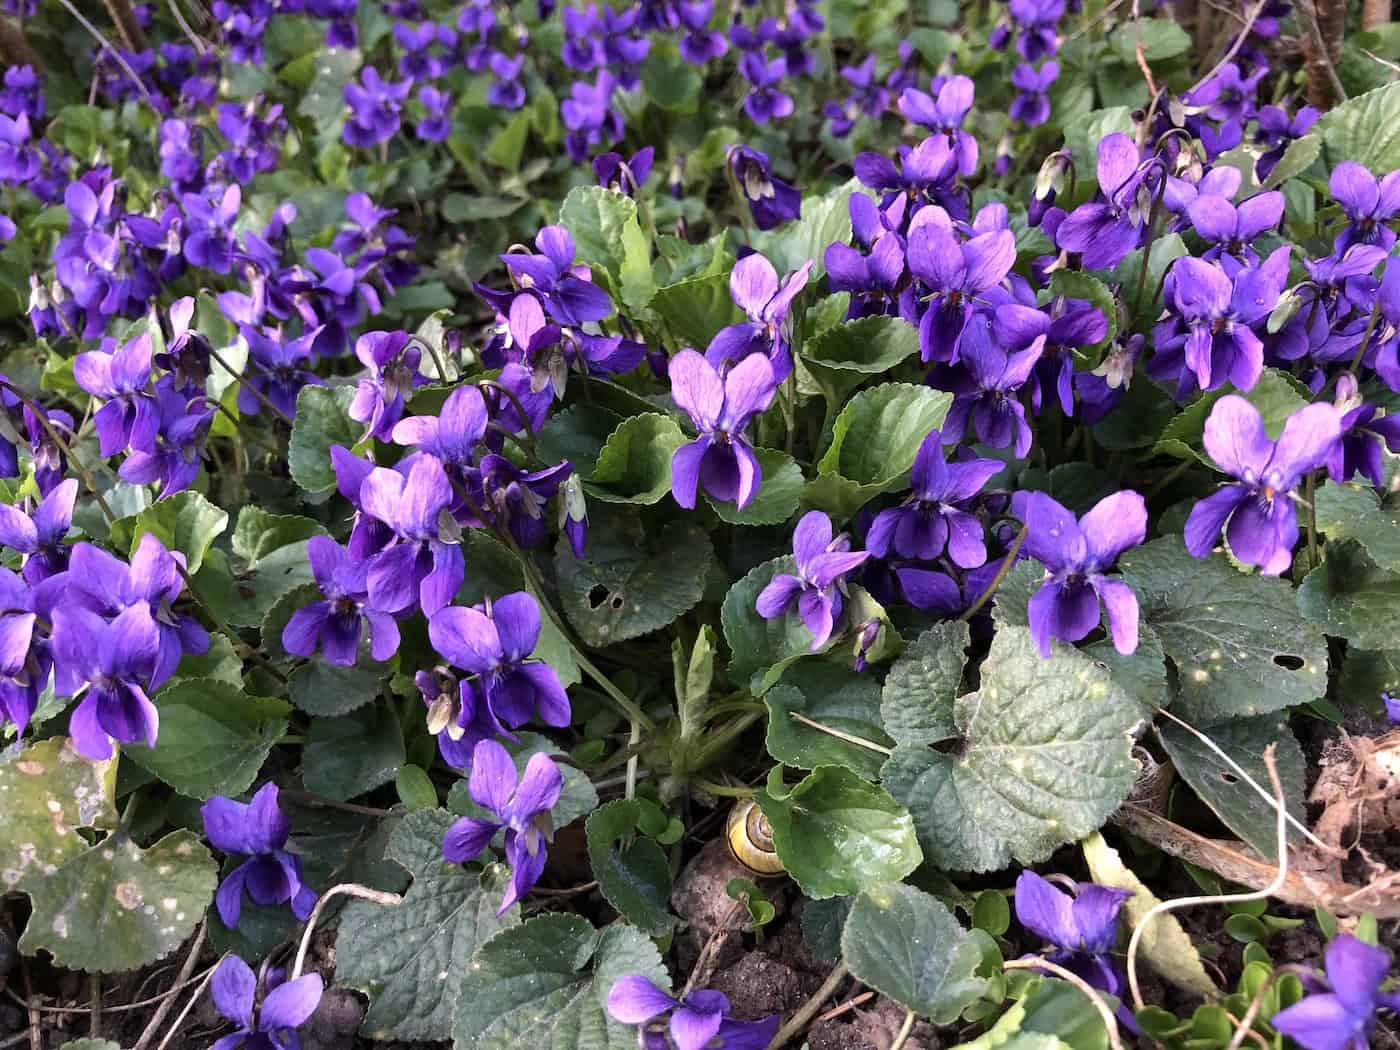 Sweet violet flowers